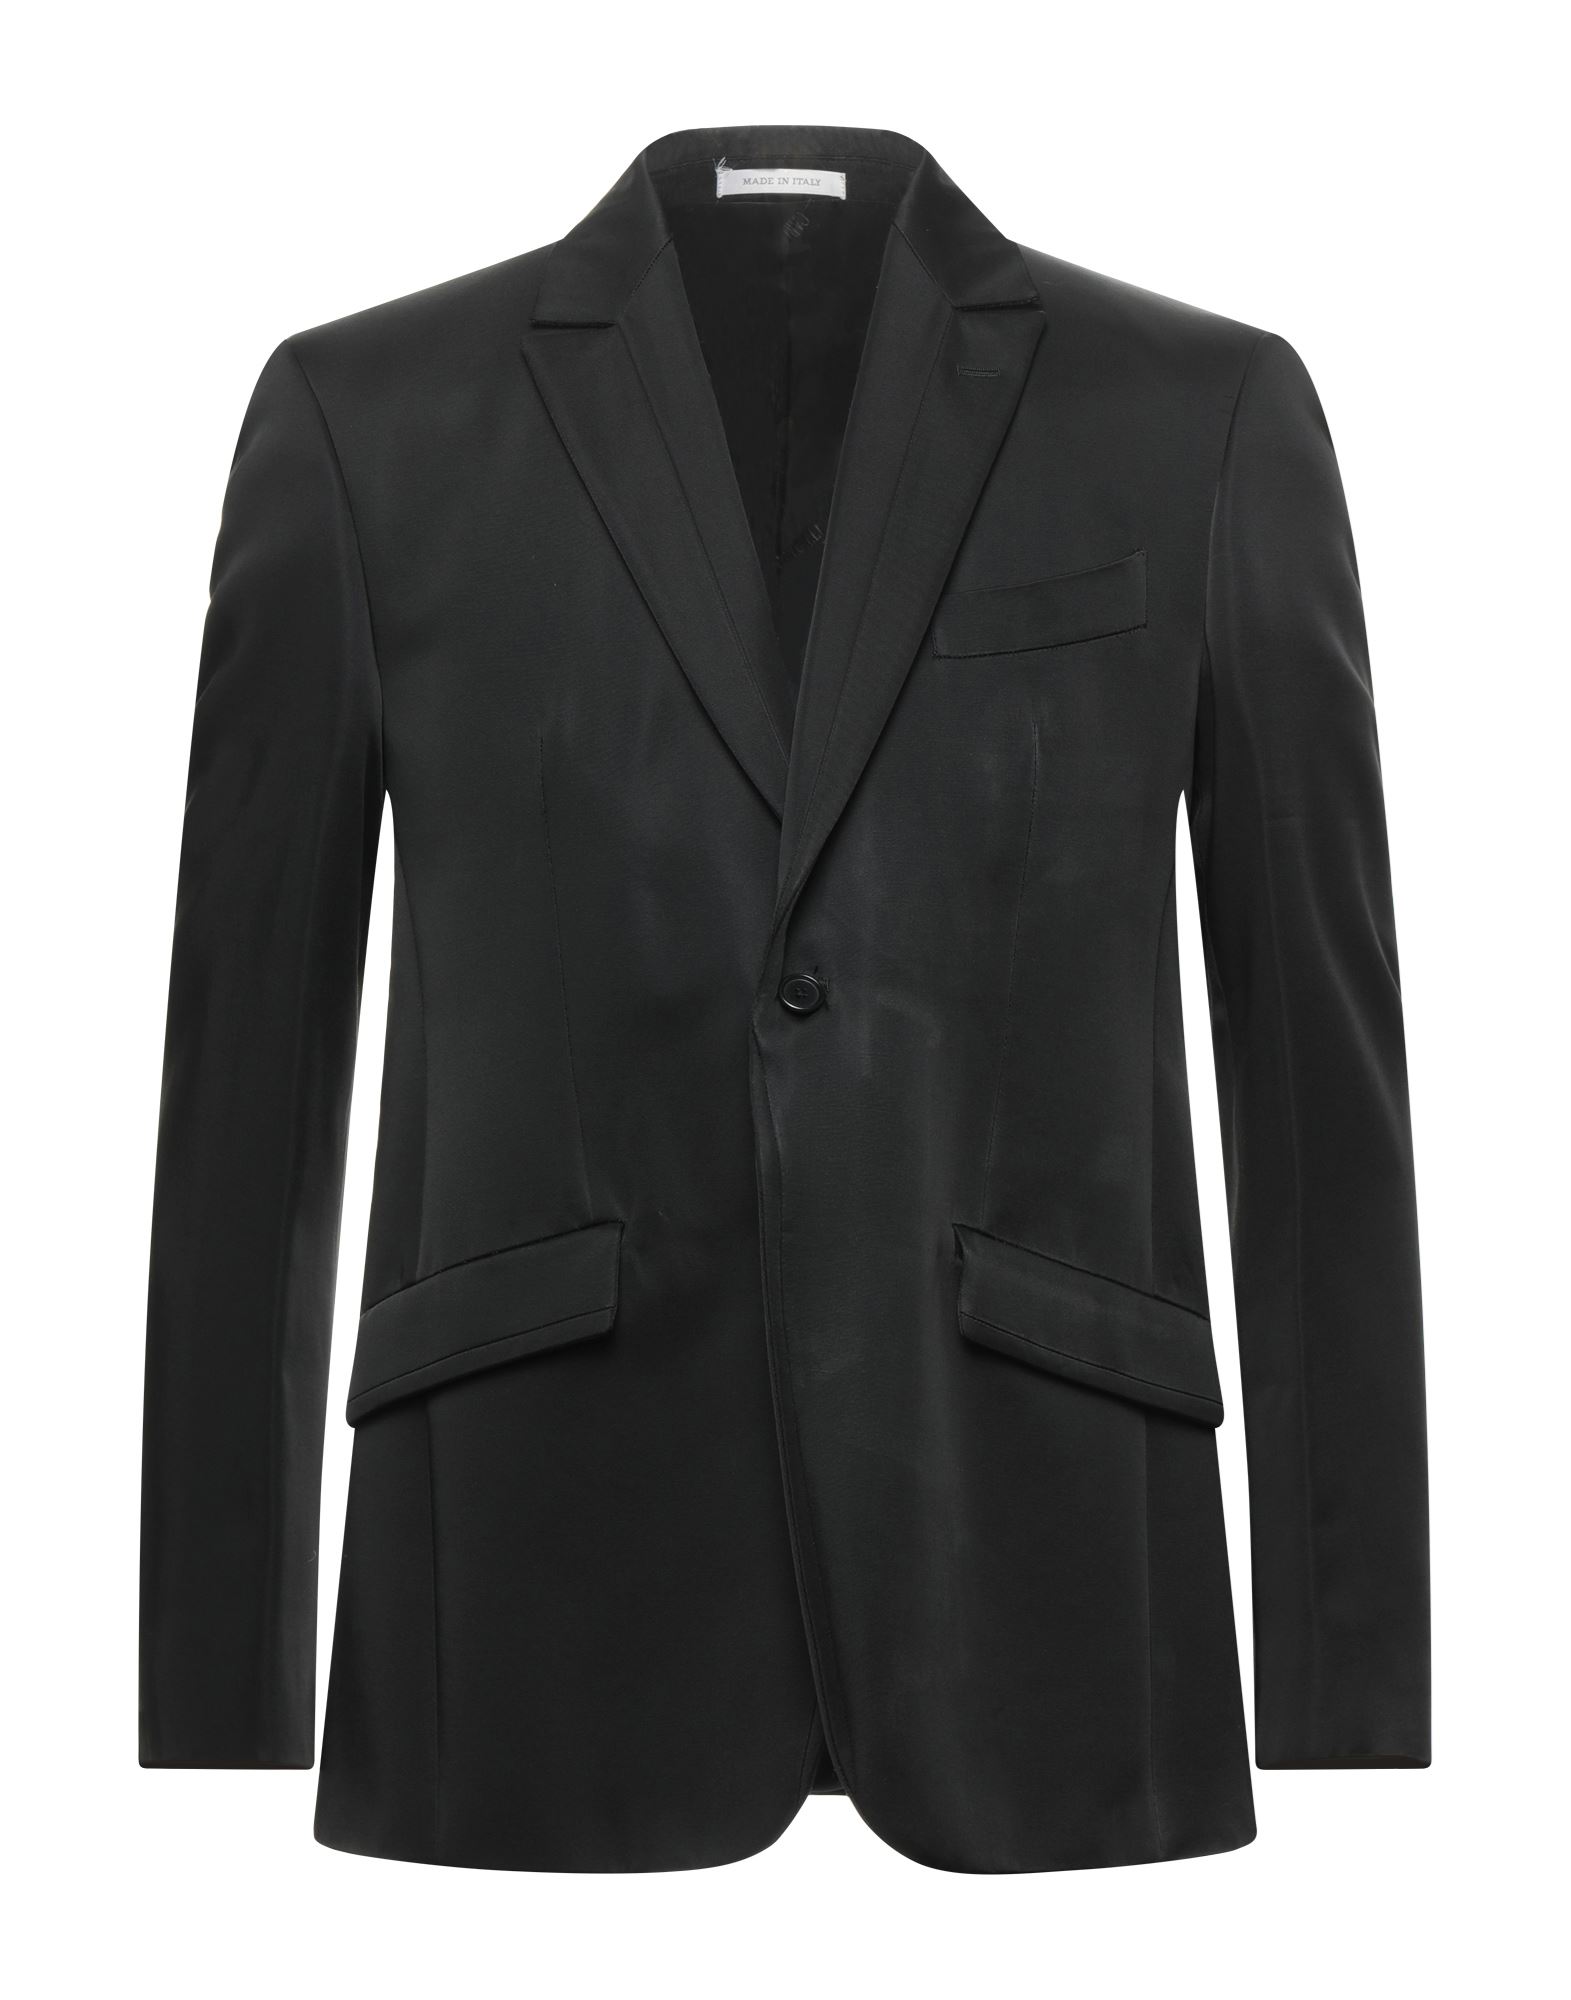 CARLO PIGNATELLI CERIMONIA Suit jackets